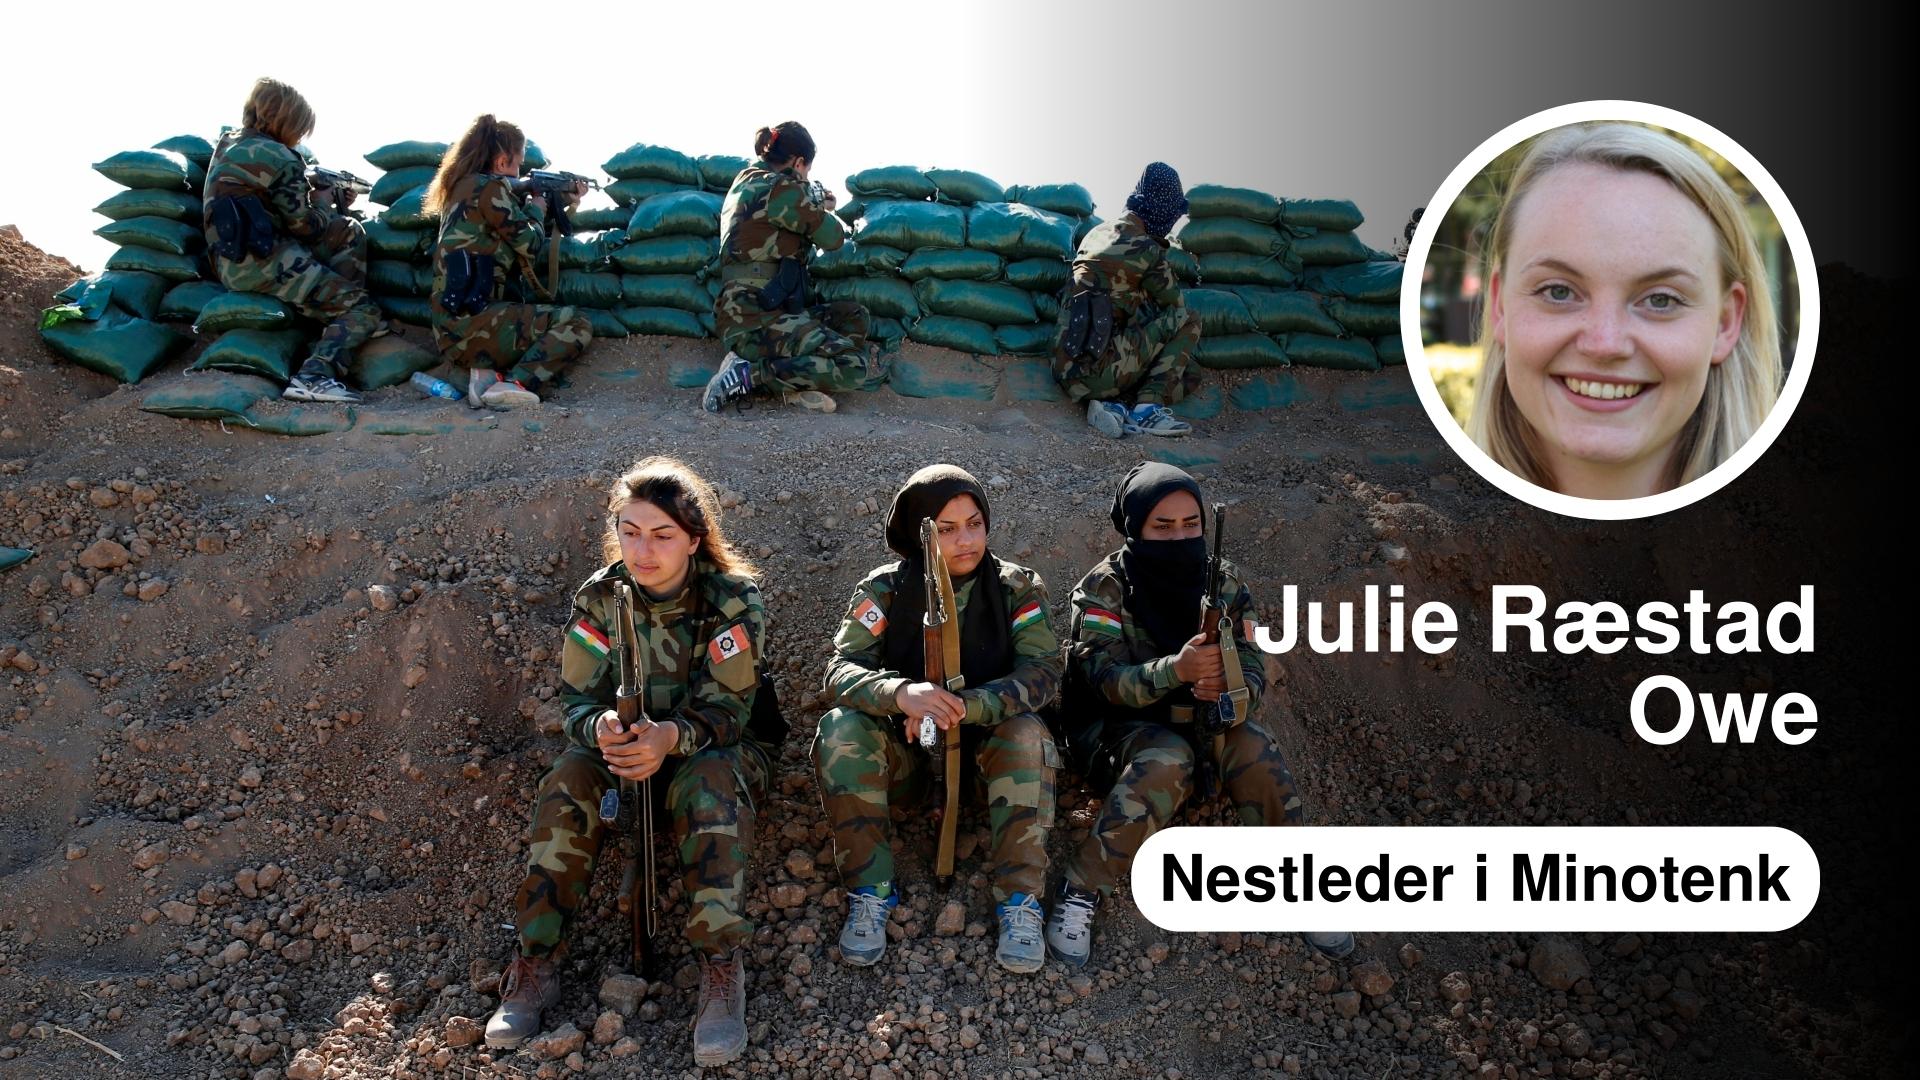  Kvinnelige fremmedkrigere i kurdiske styrker som kjemper mot IS, fremstilles ofte som tøffe i mediene – i motsetning til kvinner som slutter seg til IS. Bildet viser iransk-kurdiske kvinnelige soldater i kamp mot IS nær Mosul i november i fjor.  